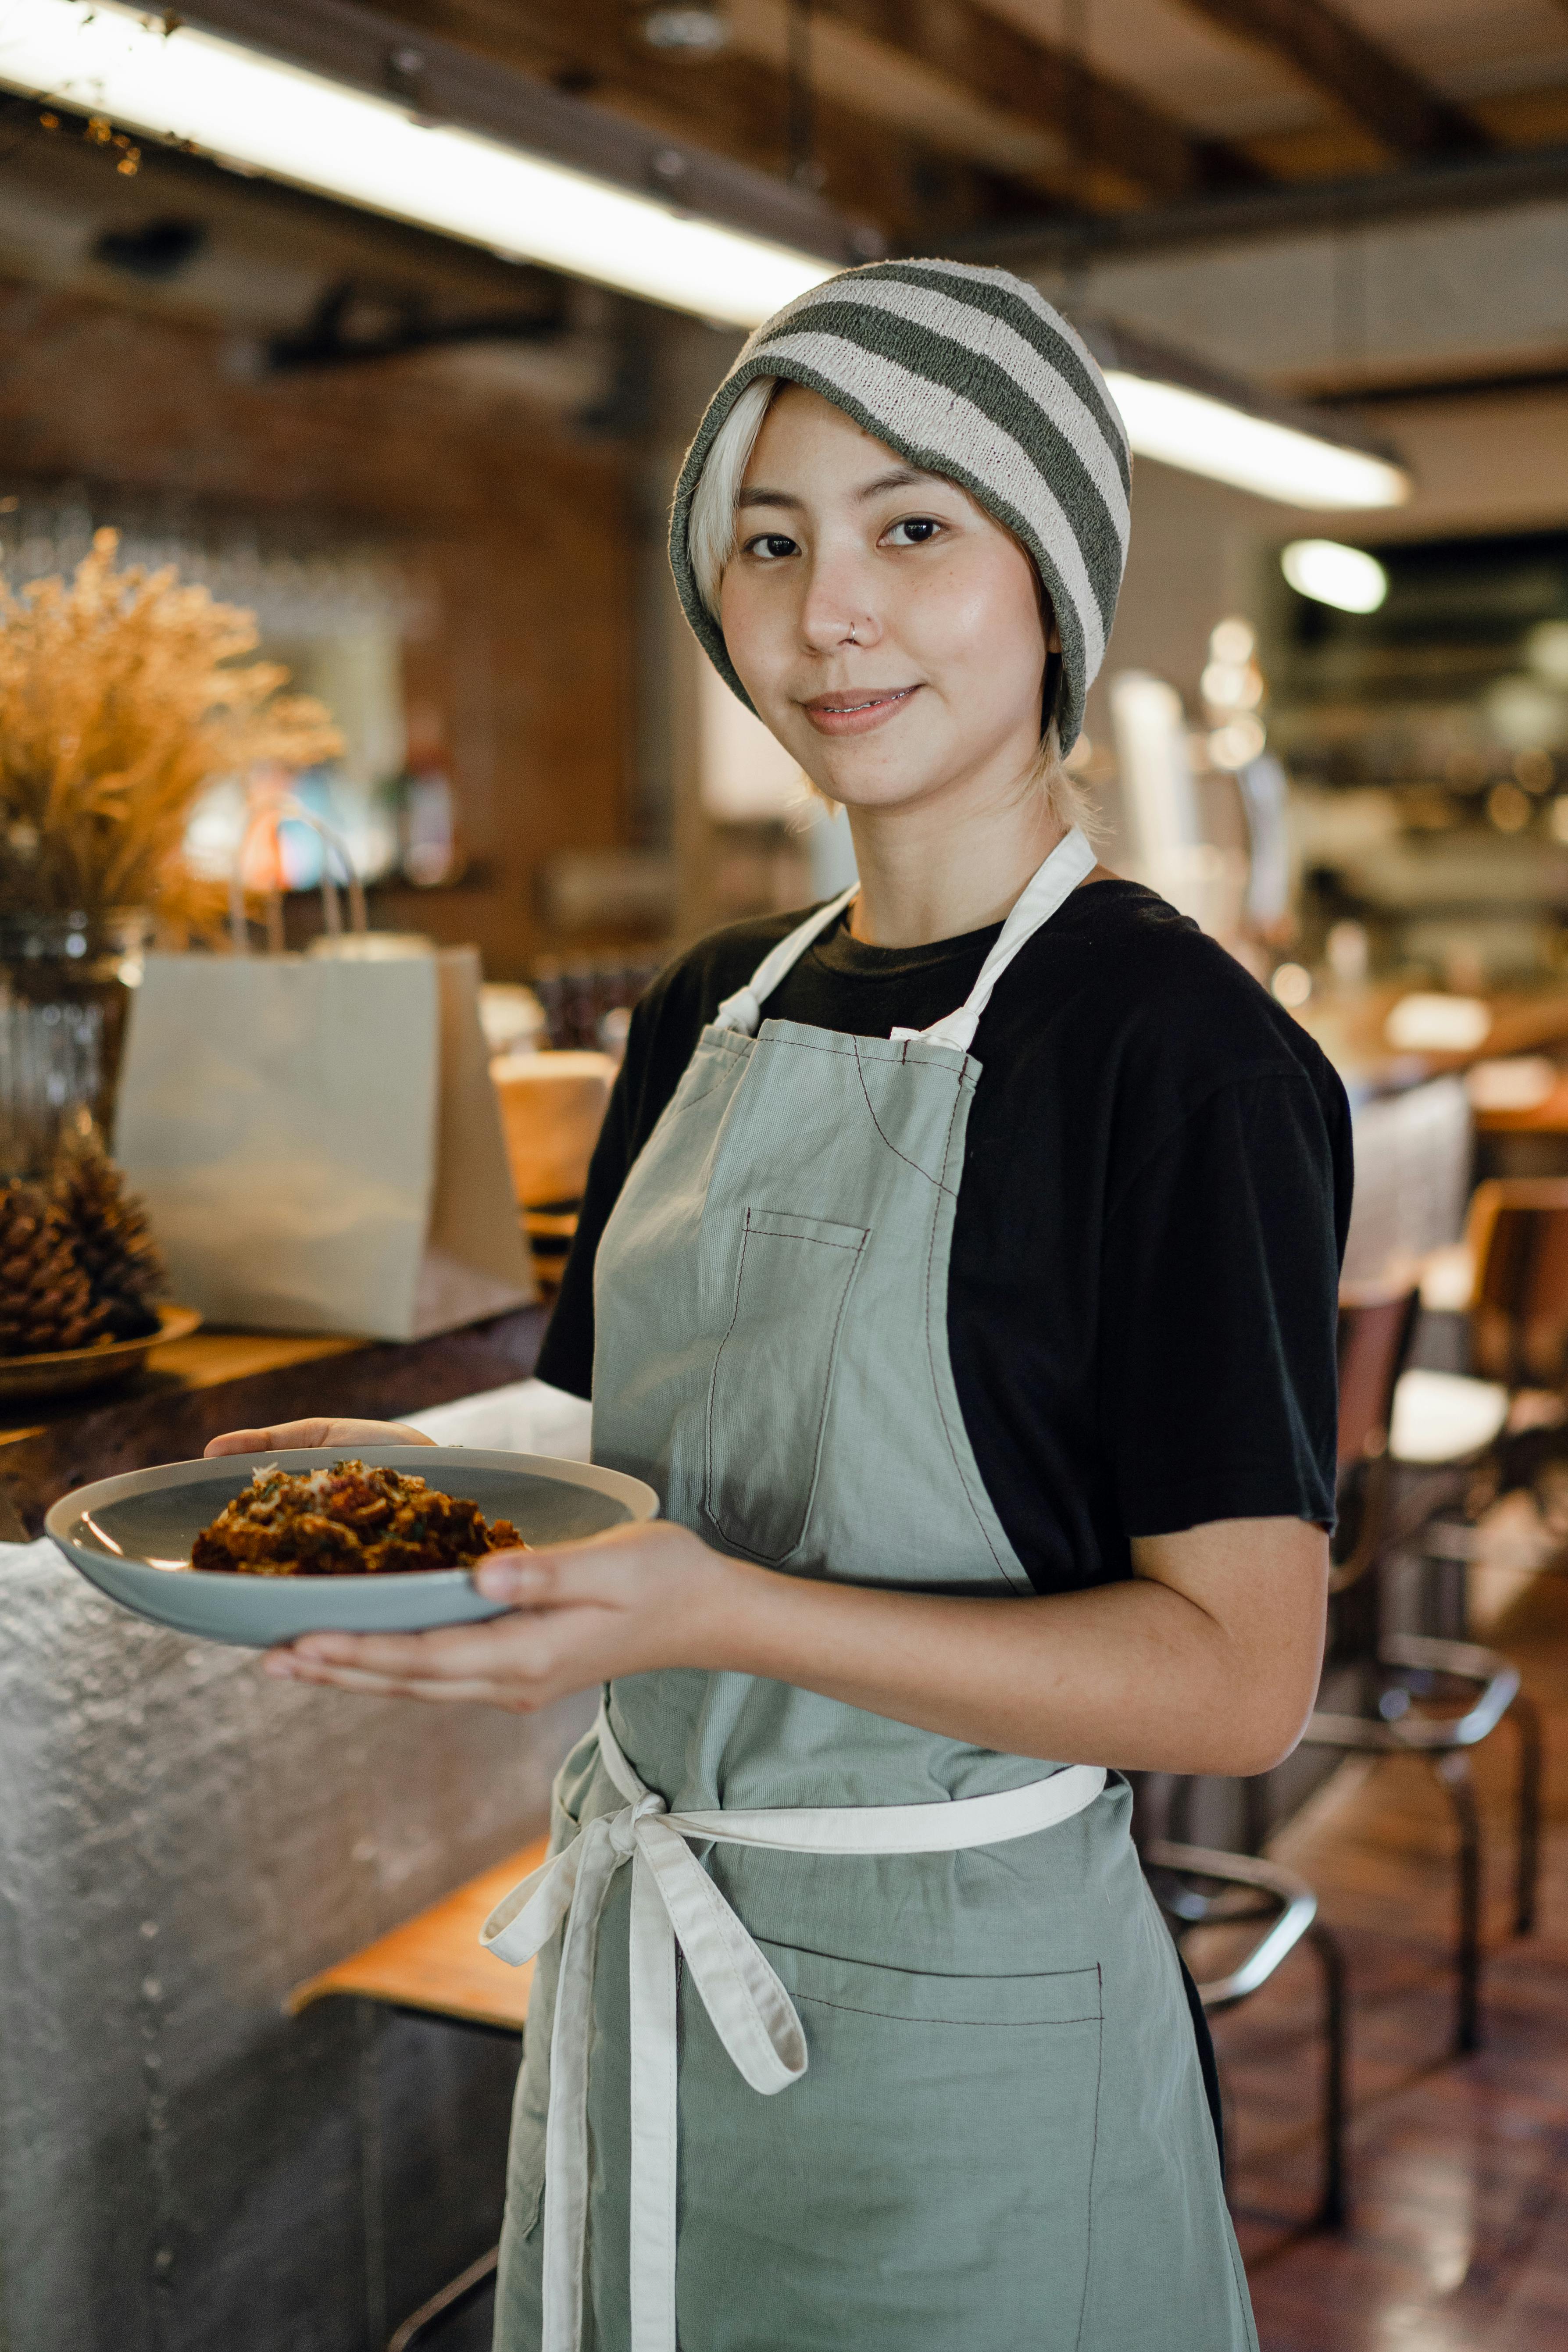 Une femme servant de la nourriture dans un café | Source : Pexels